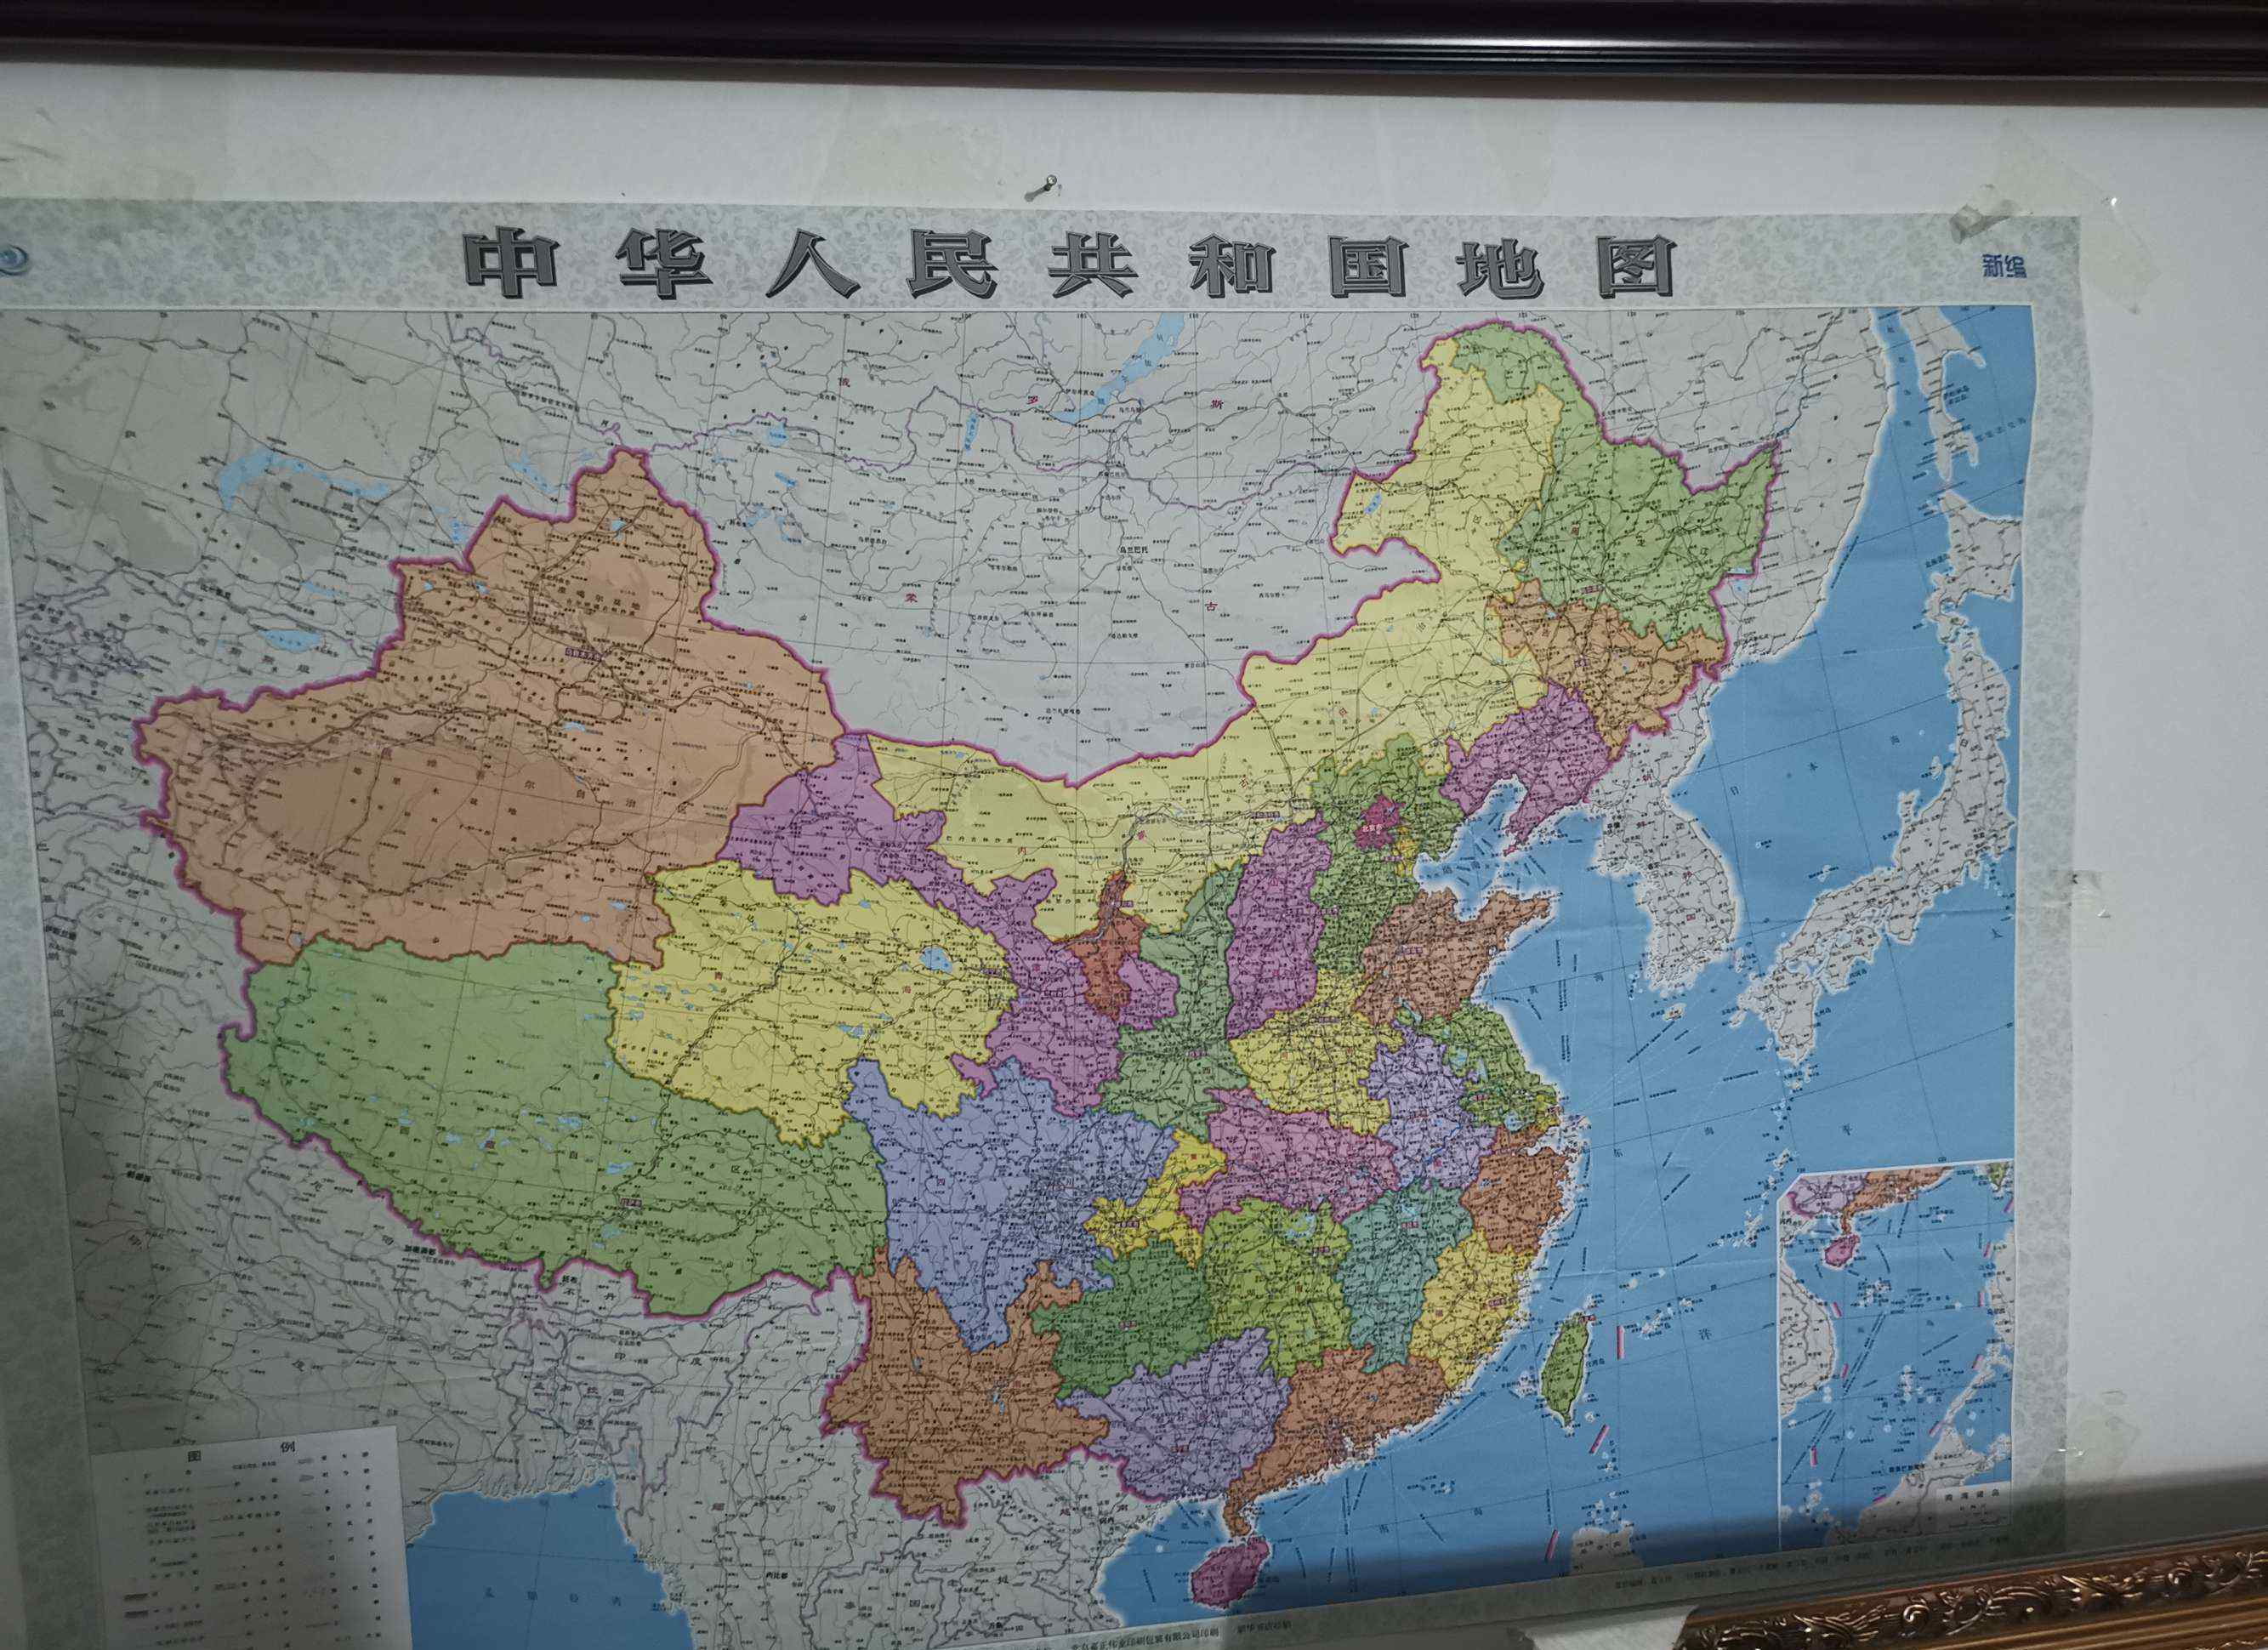 库页岛地图 新华书店出售的中国地图东北角有曾经属于中国的最大岛屿——库页岛